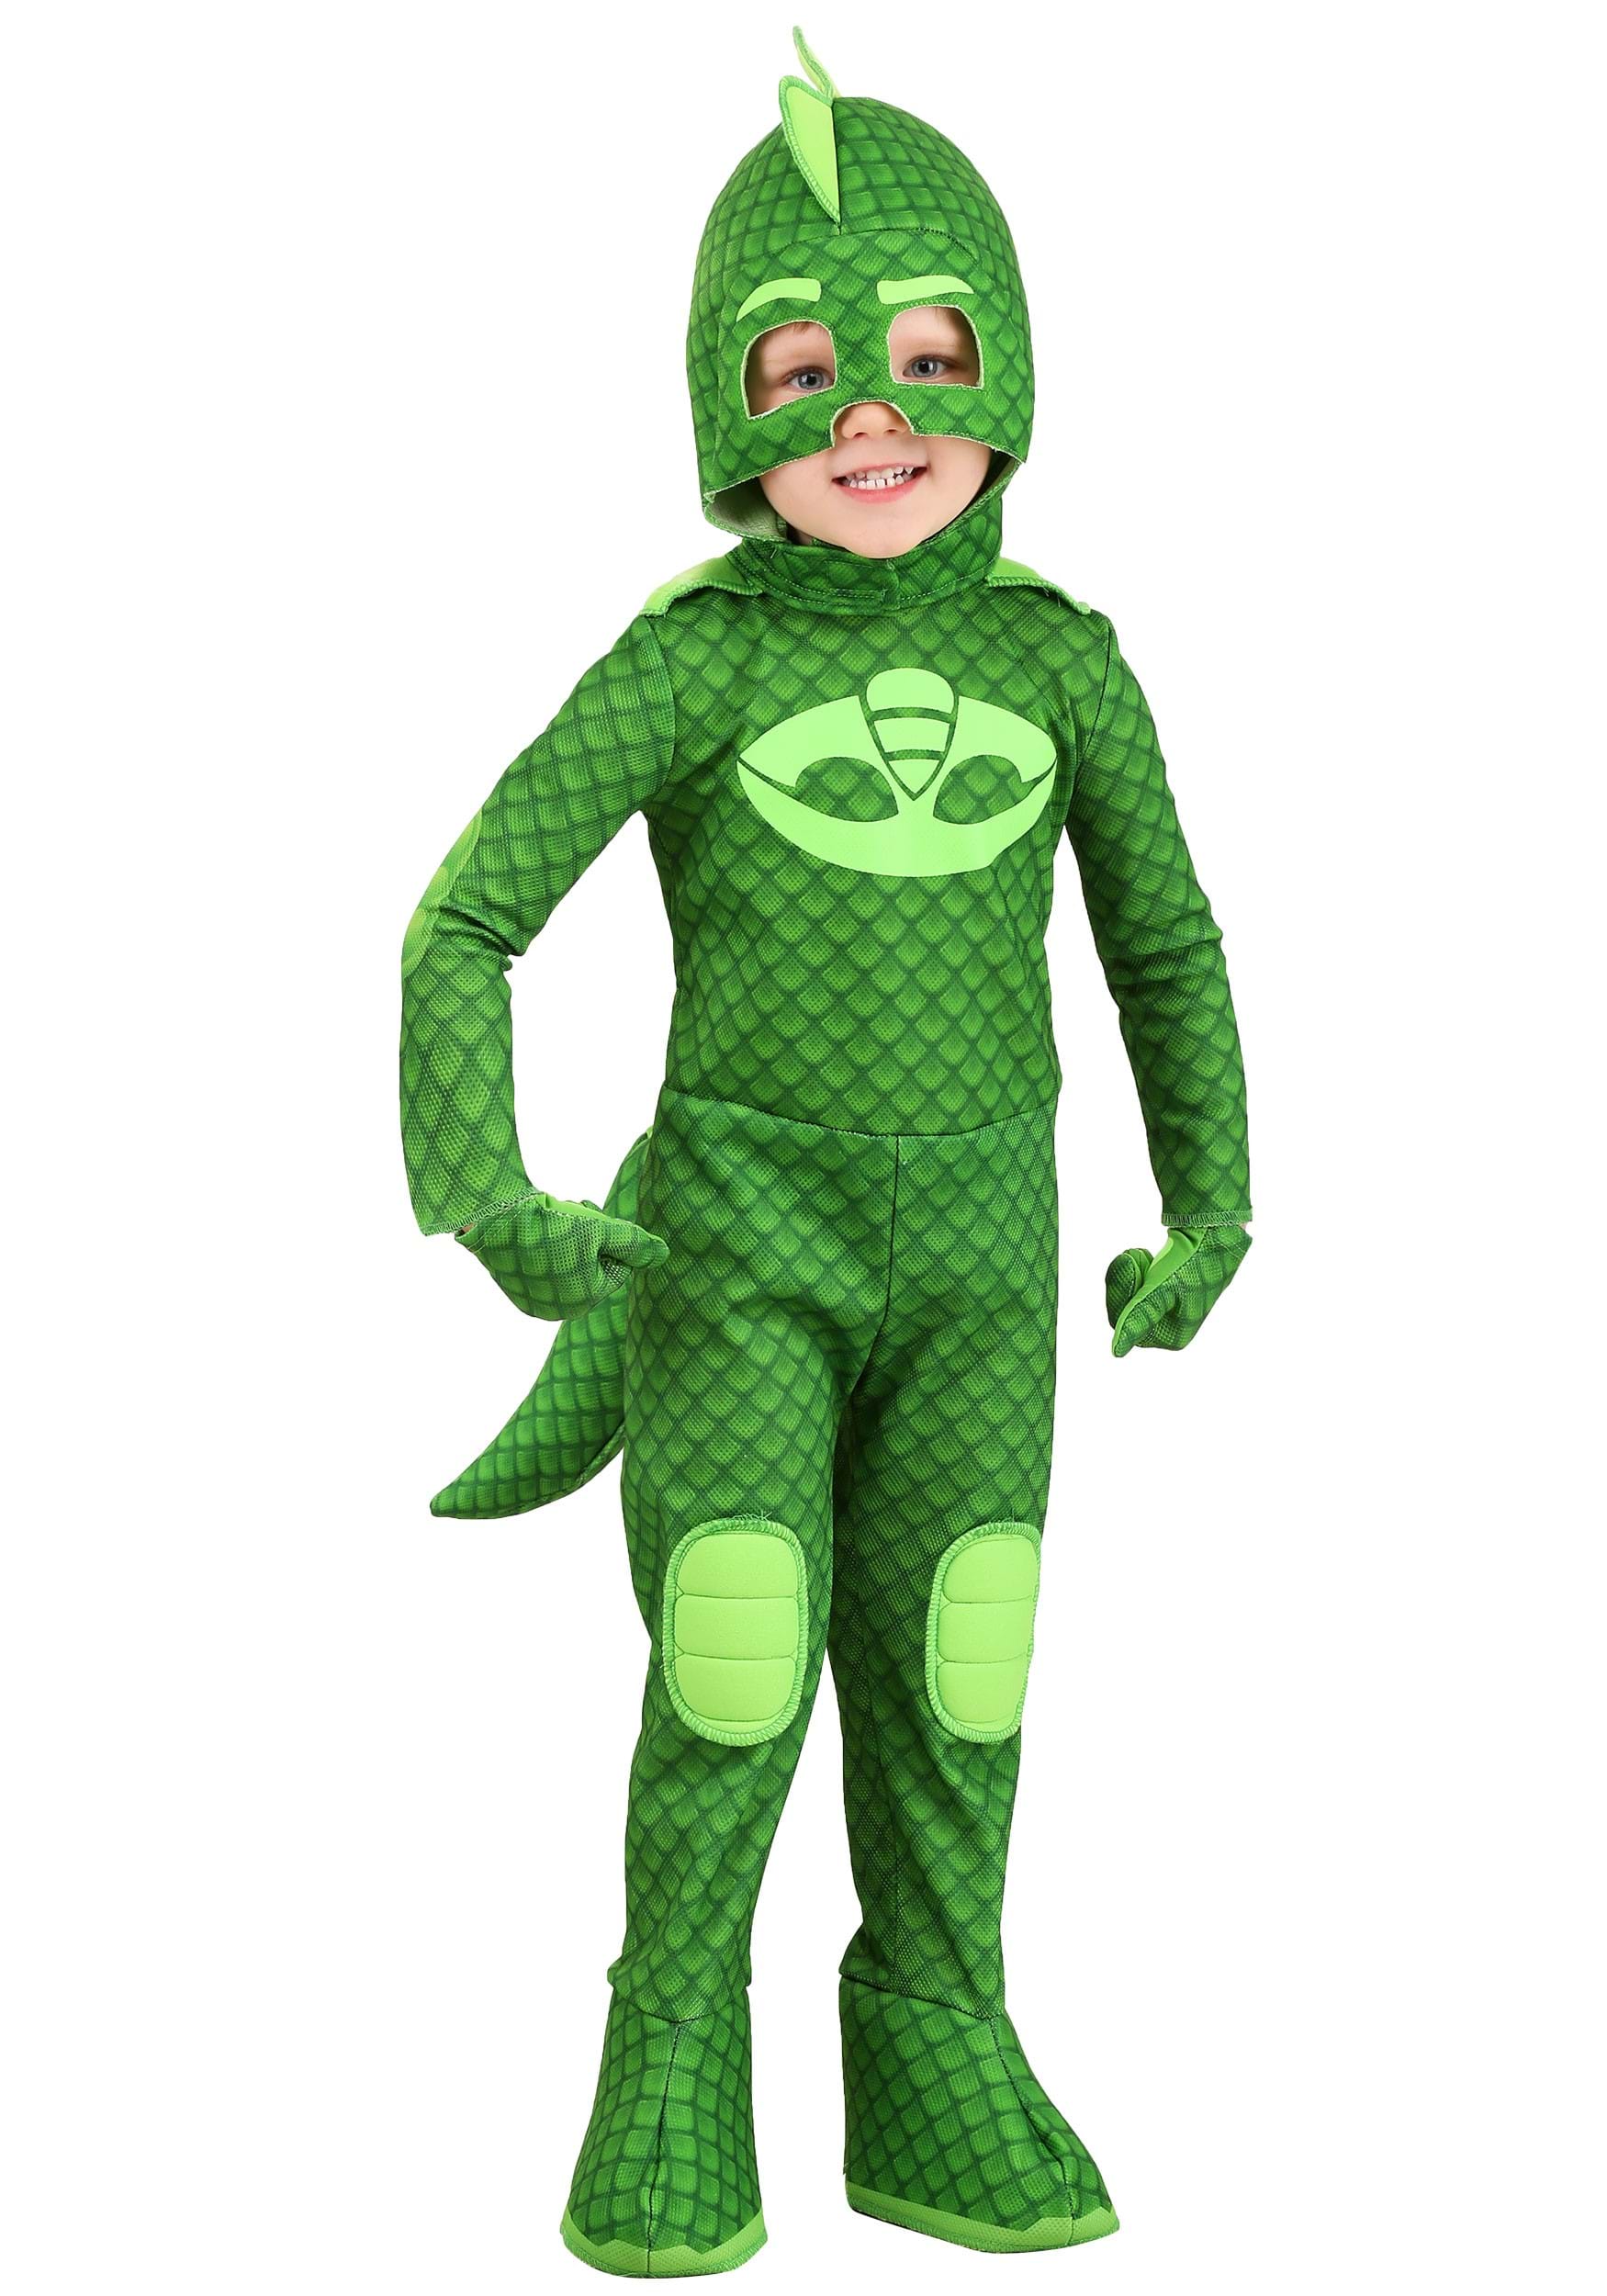 New PJ Masks Gekko Dress Up Halloween Dress Up PJMASKS Green Disney Junior 4-6X 